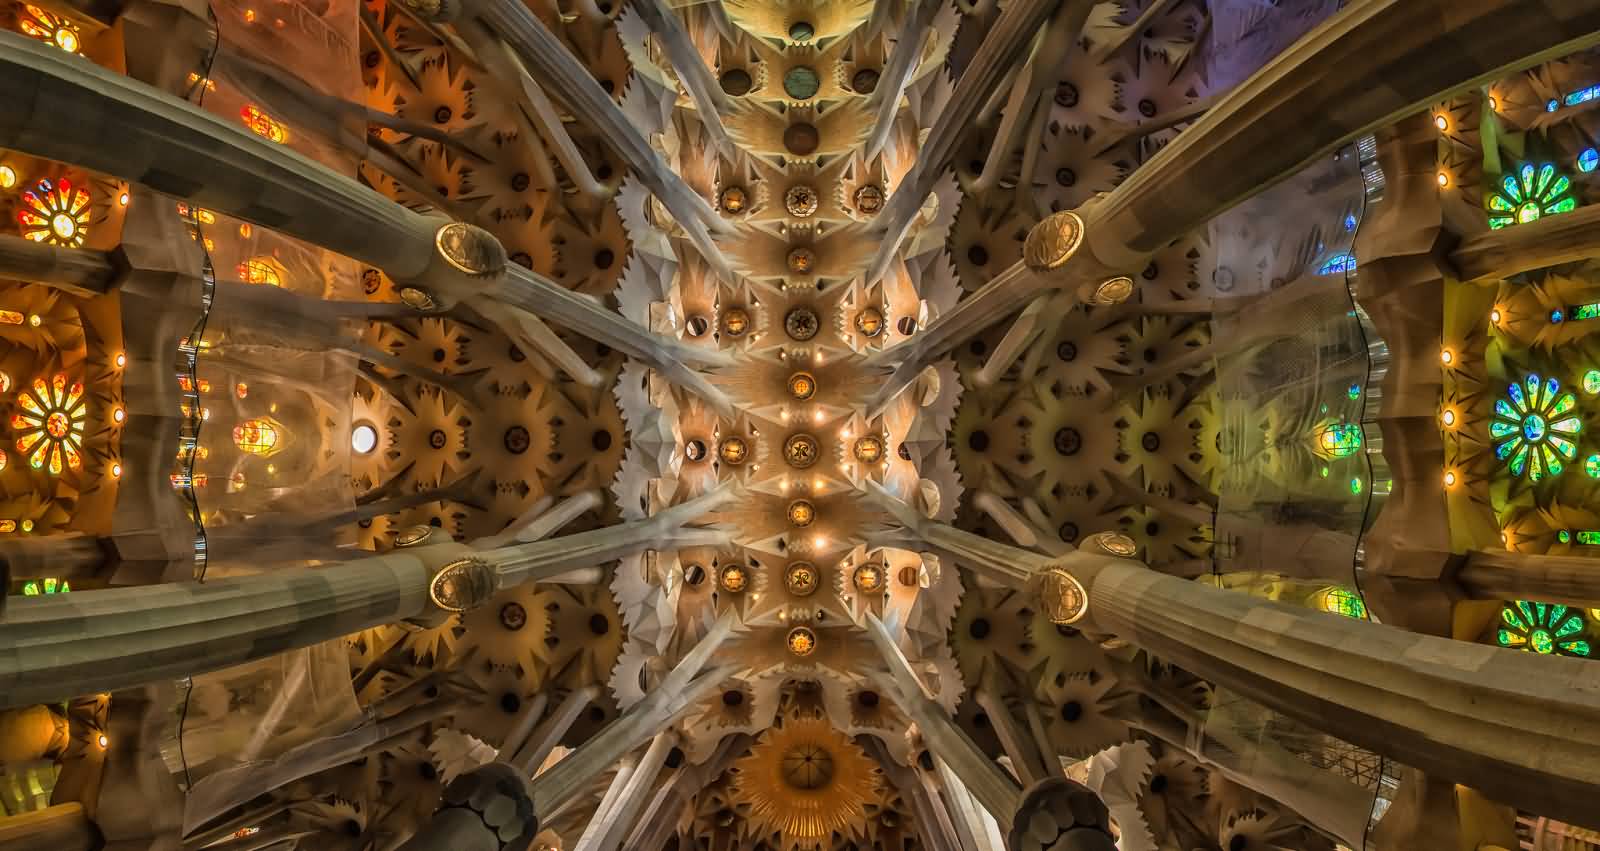 Amazing Interior Architecture Of The Sagrada Familia